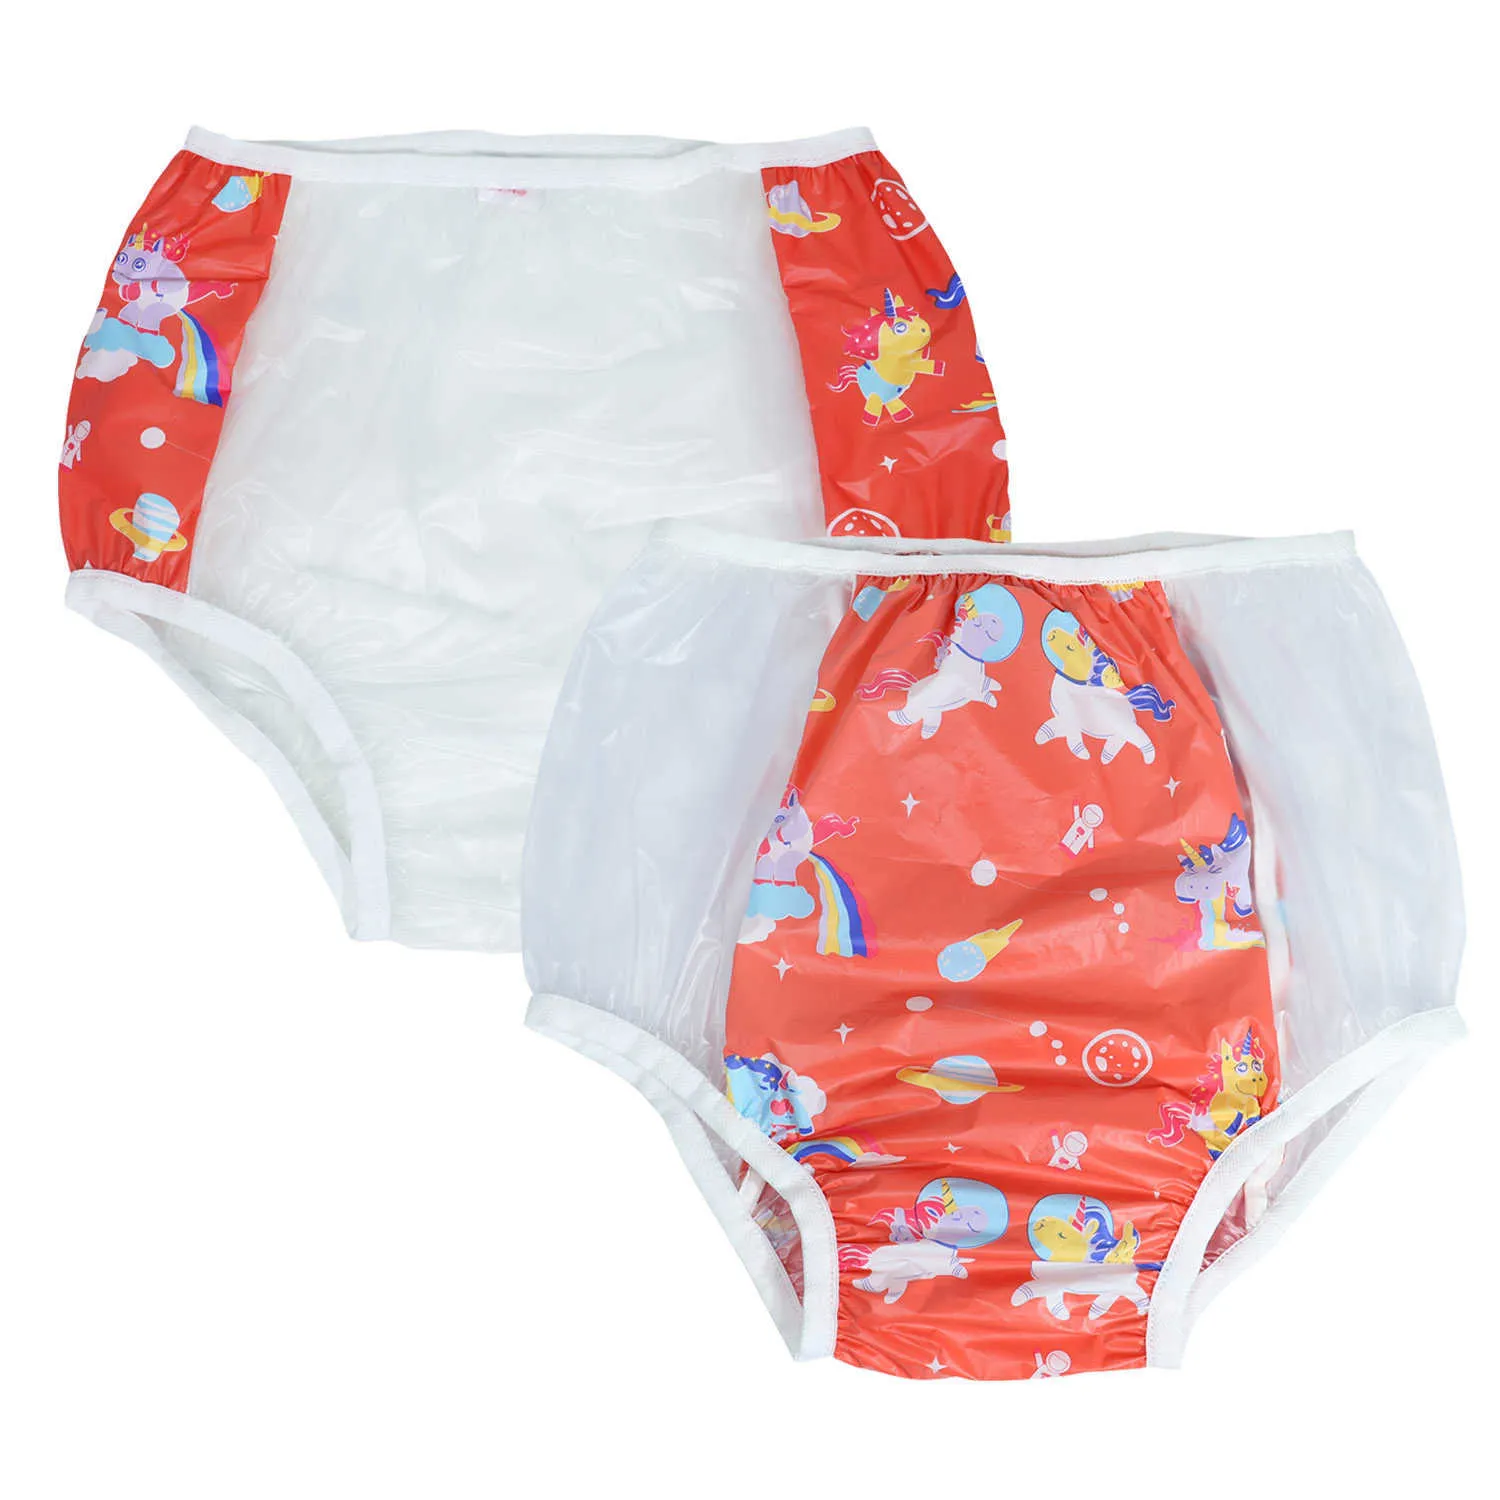 2 uds Dadious abdl pañales para bebés adultos bragas incontinencia banda elástica plástico reutilizable pantalones ddlg rojo PVC pañales para hombres H0830